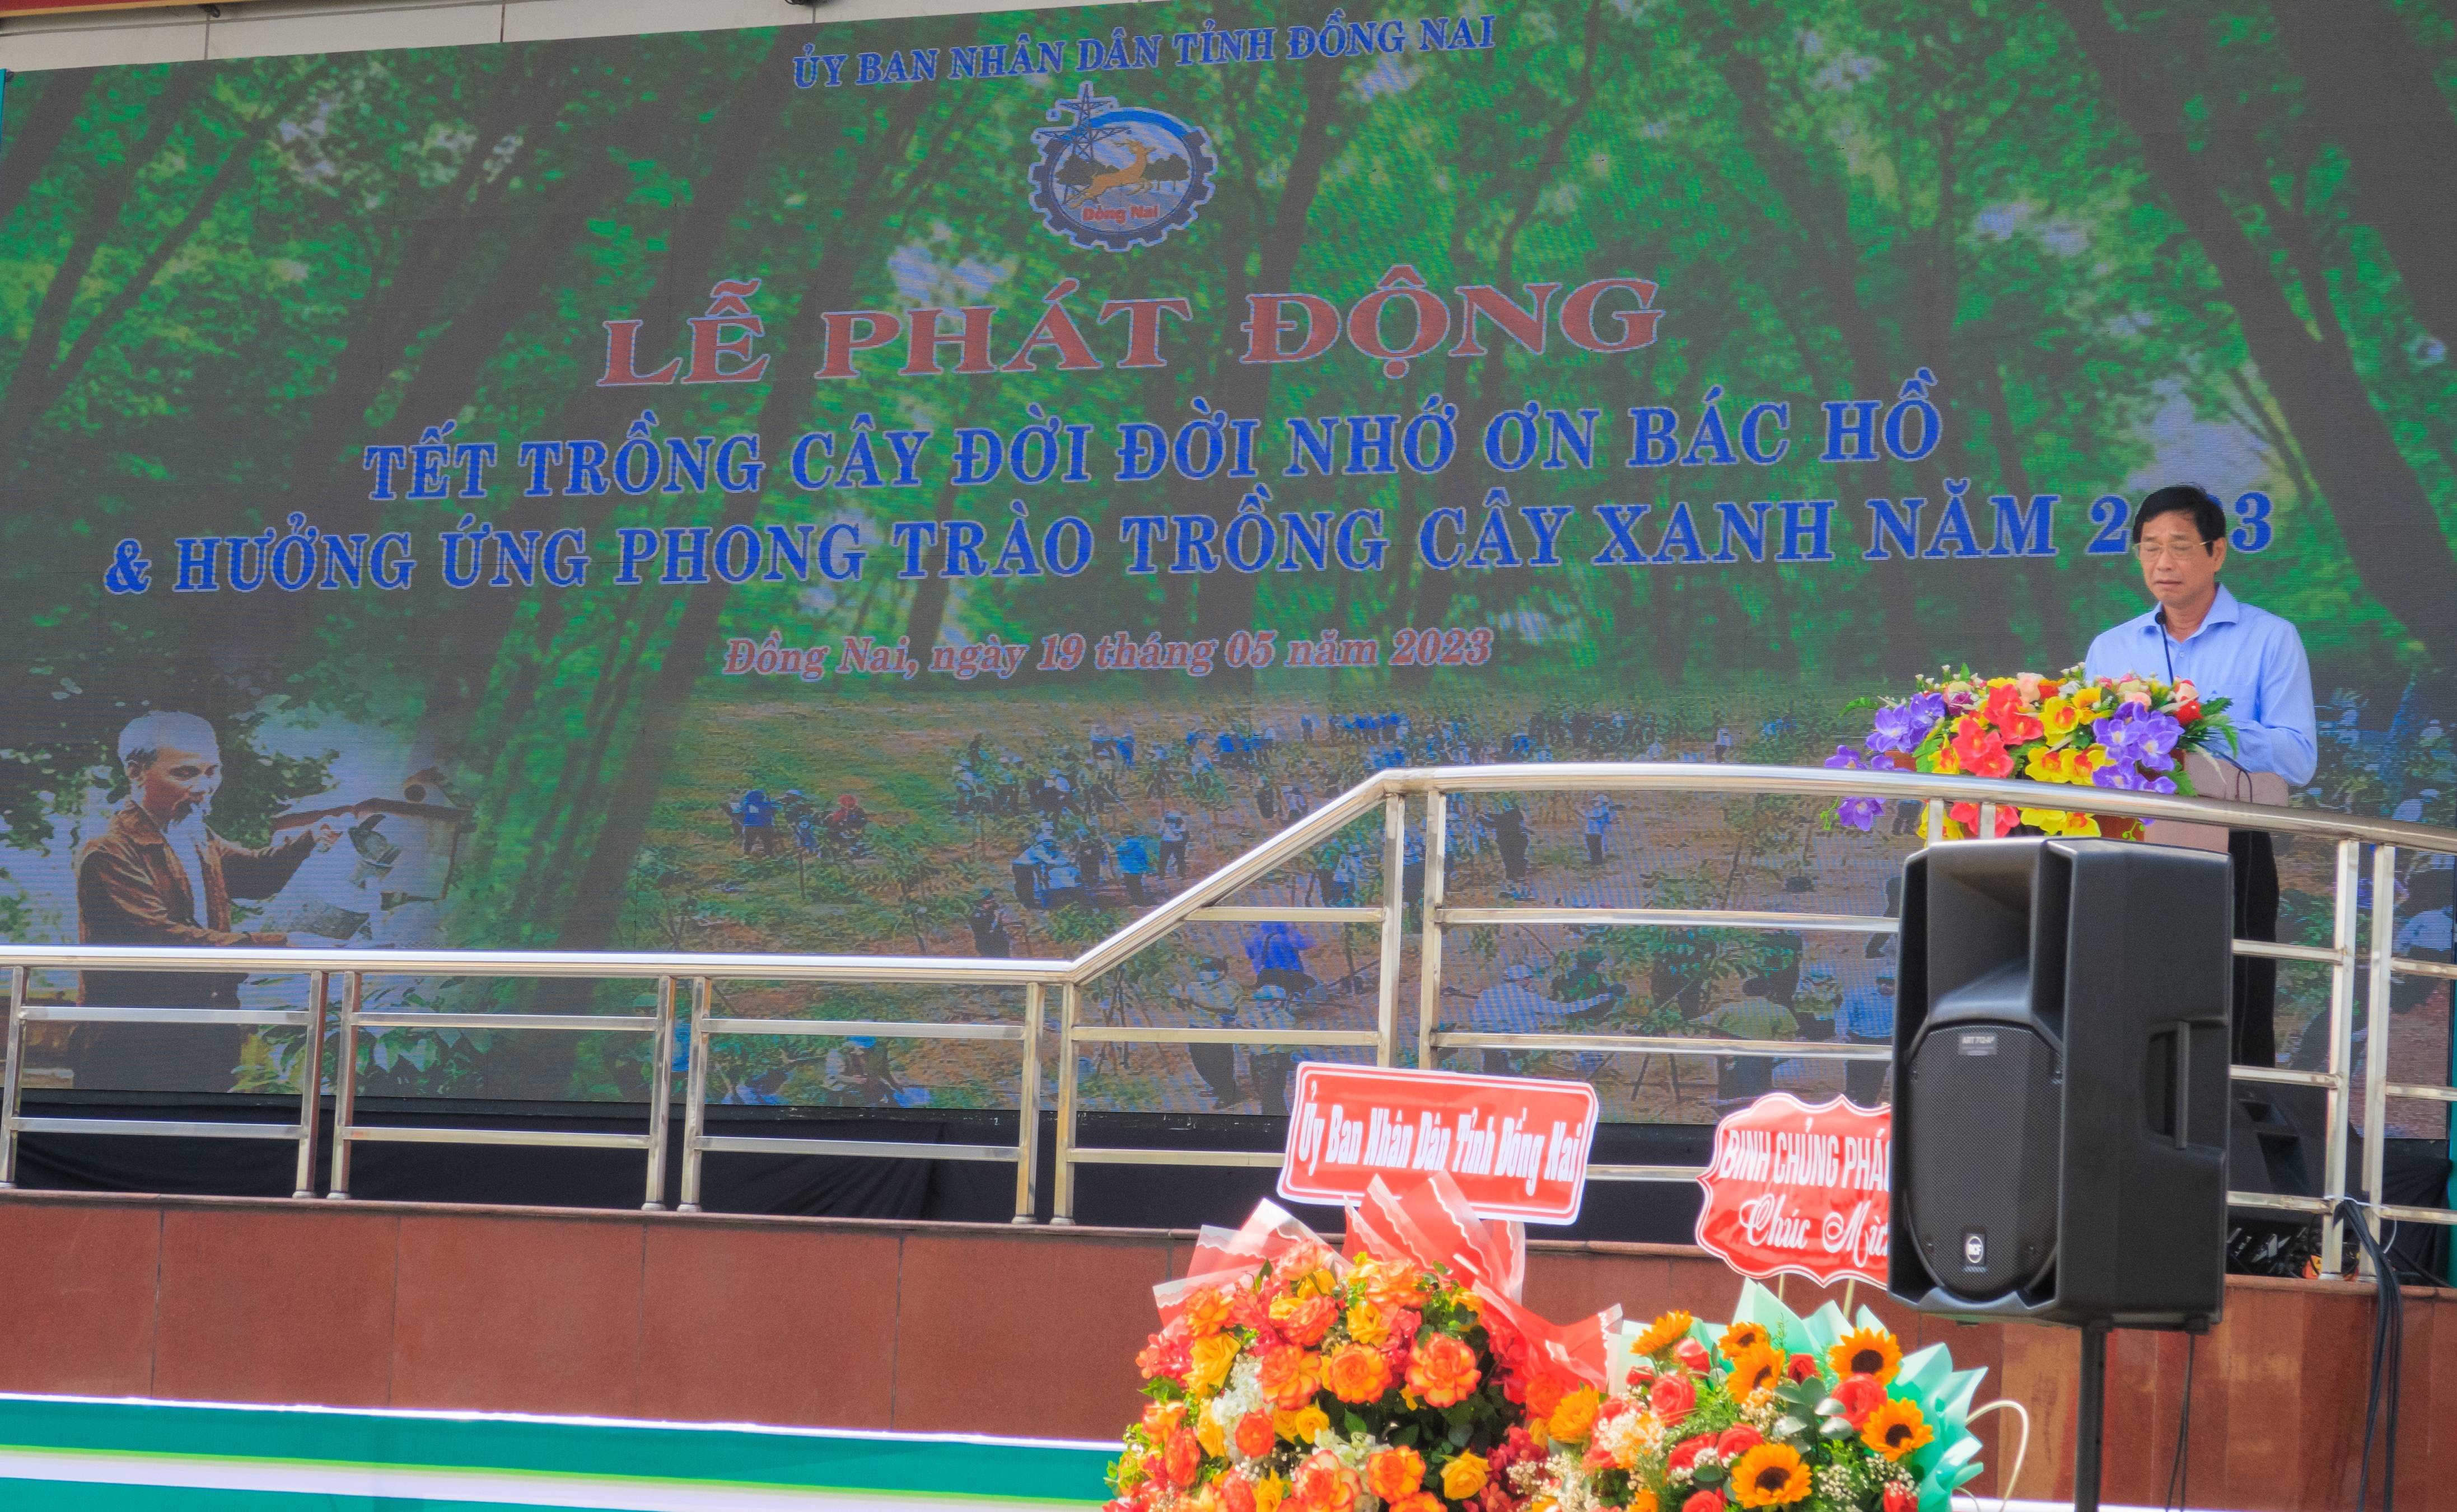 Tỉnh Đồng Nai tổ chức Lễ phát động “Tết trồng cây đời đời nhớ ơn Bác Hồ” năm 2023 và Hưởng ứng Chương trình trồng một tỷ cây xanh“Vì một Việt Nam xanh” của Thủ tướng Chính phủ